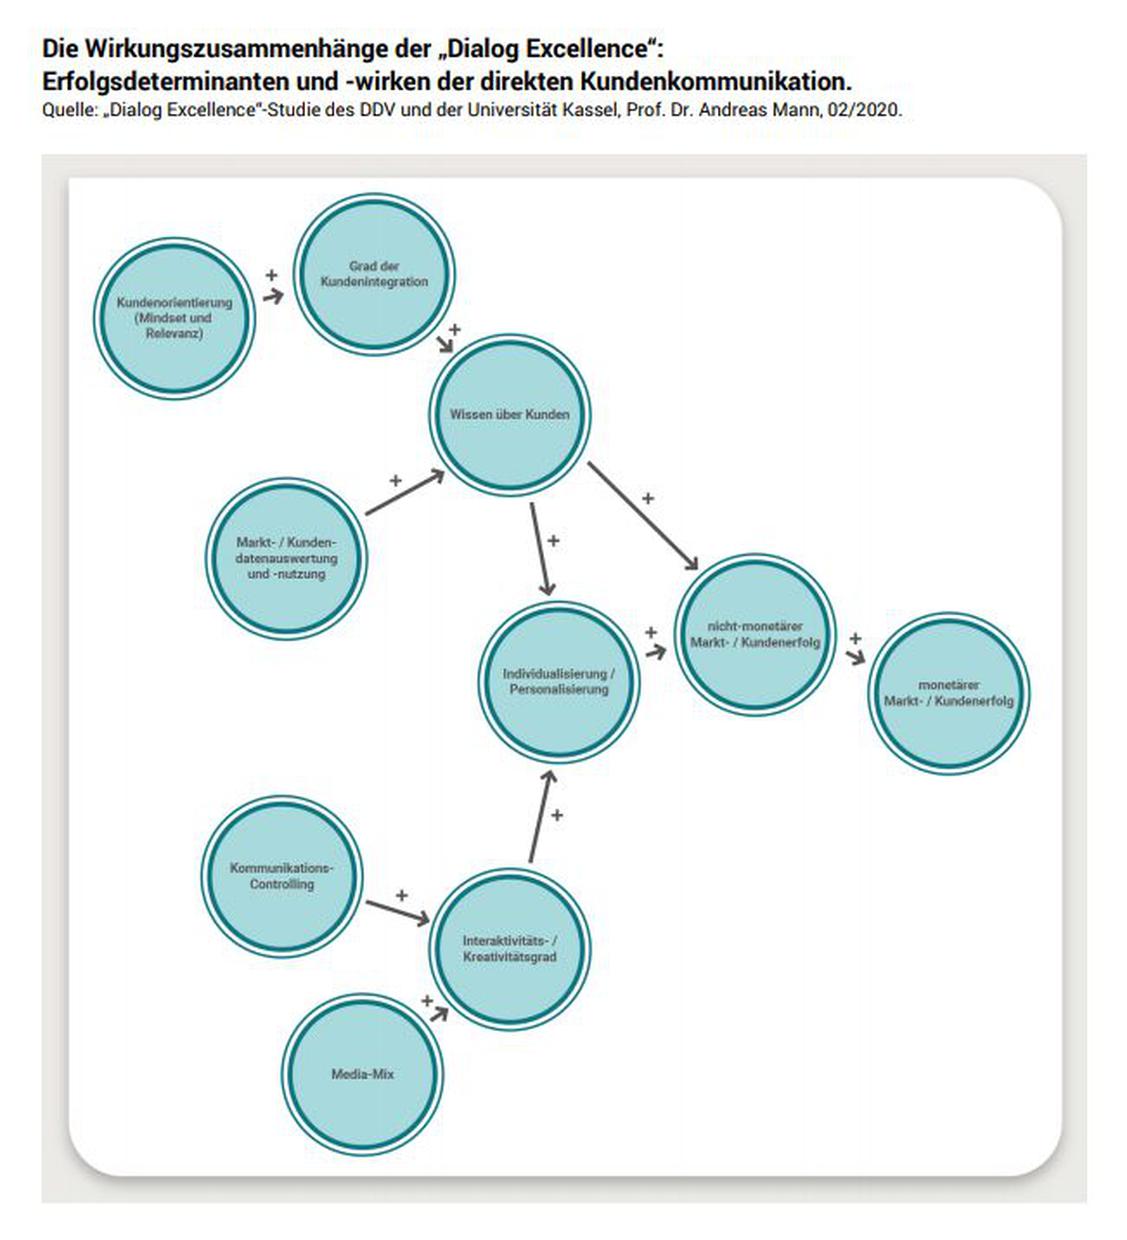 Starke Einflussfaktoren: Das Wissen über den Kunden und individualisierte Kommunikation (Grafik: DDV/Universität Kassel)